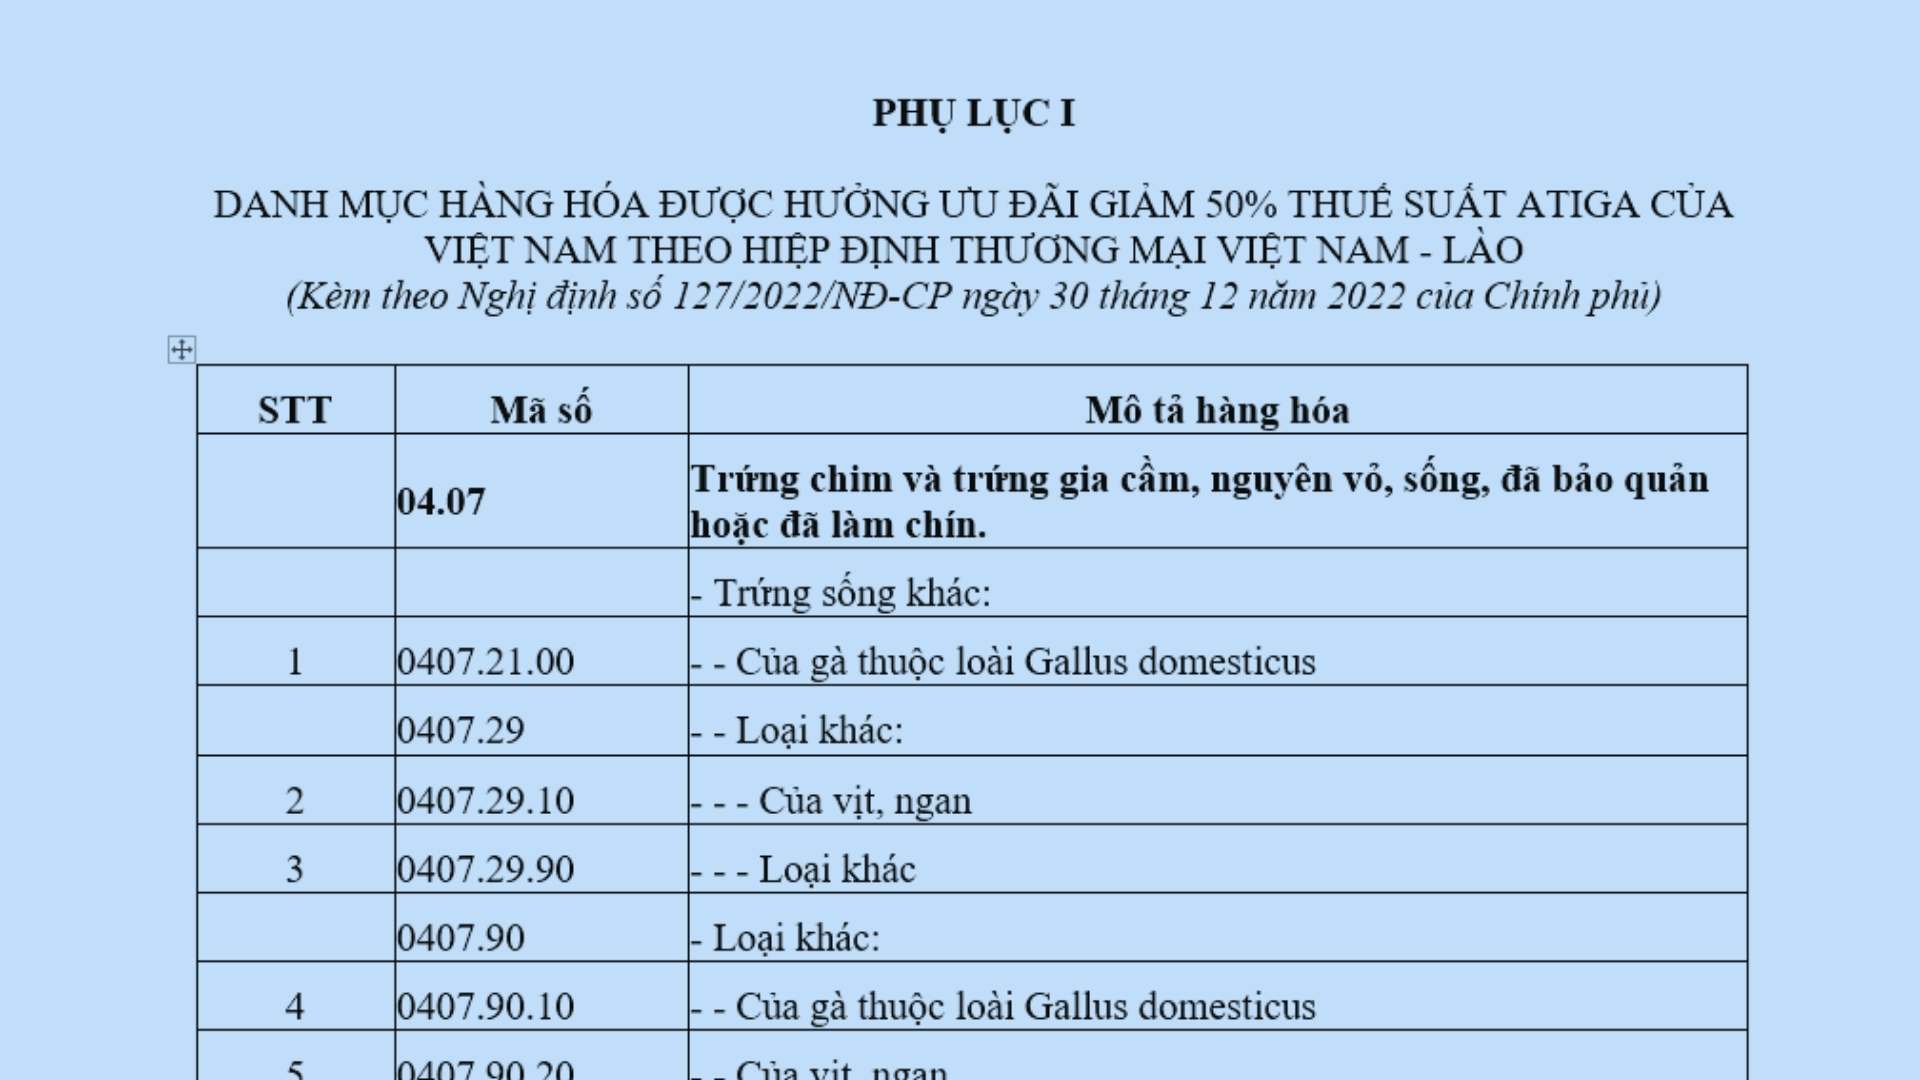 Biểu thuế nhập khẩu ưu đãi đặc biệt Việt Nam Lào